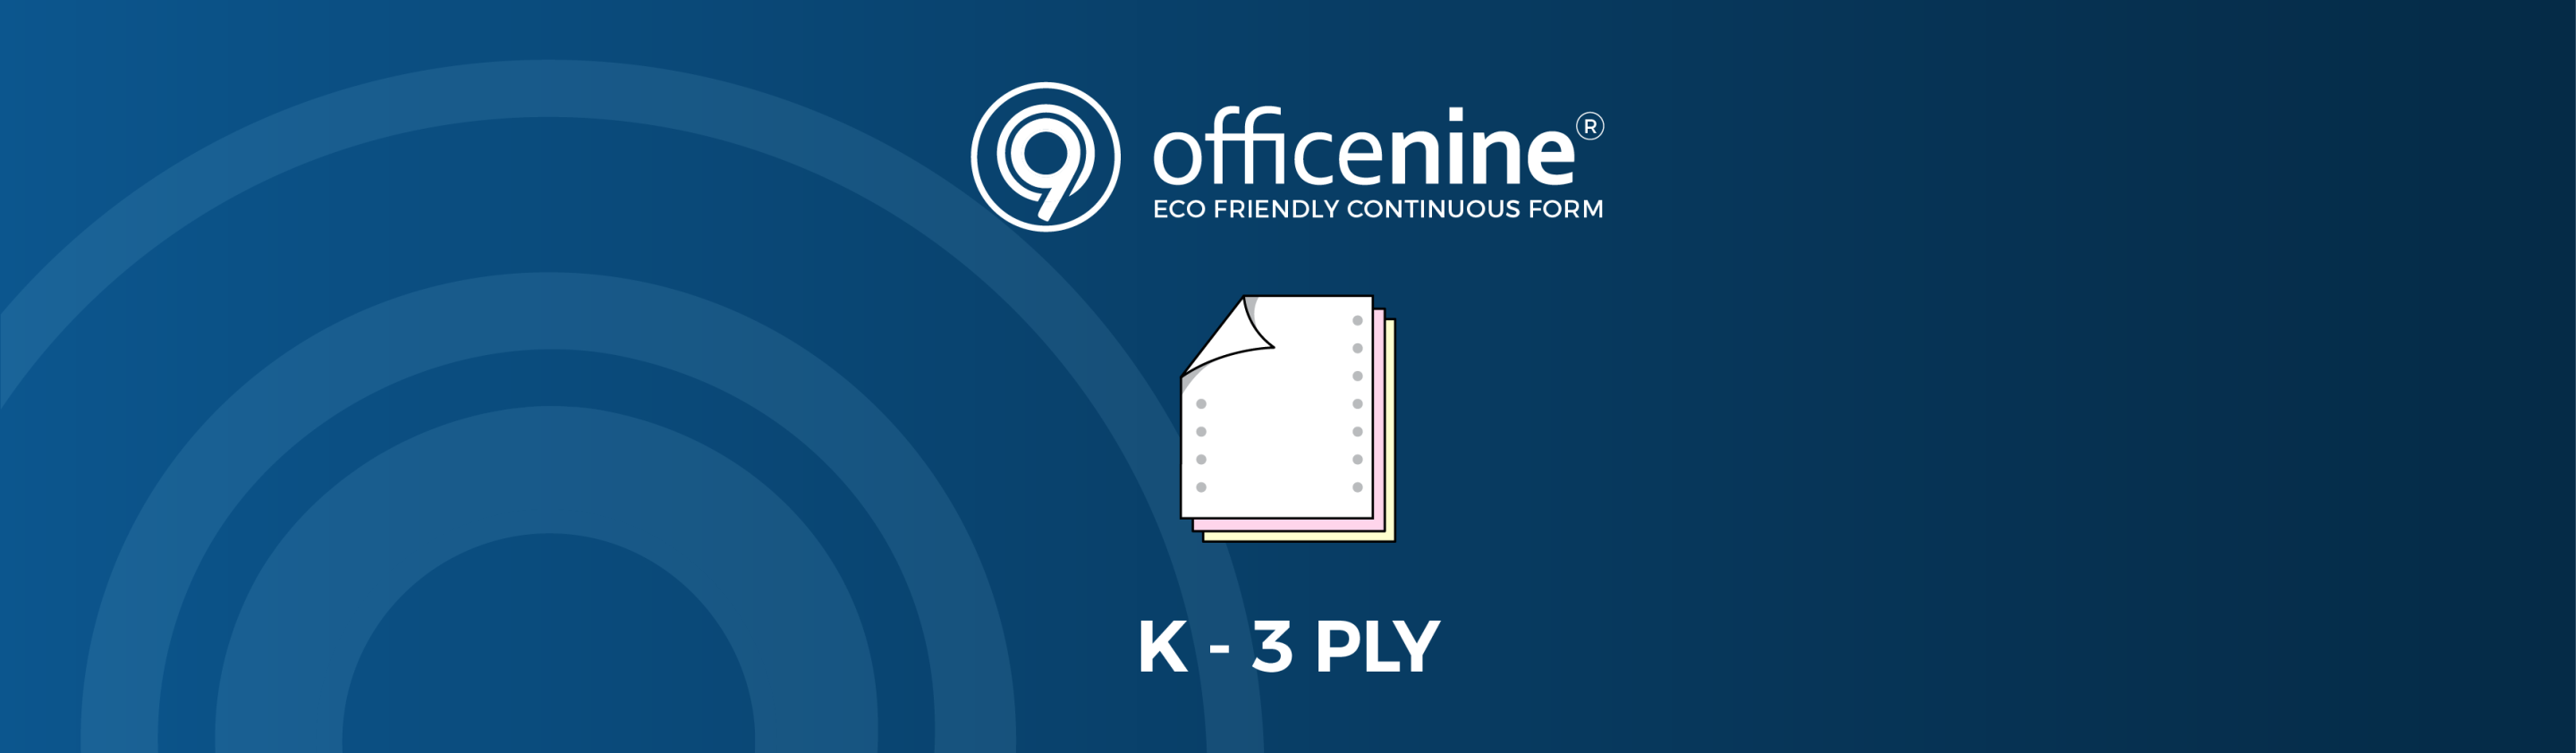 K-3-PLY Officenine